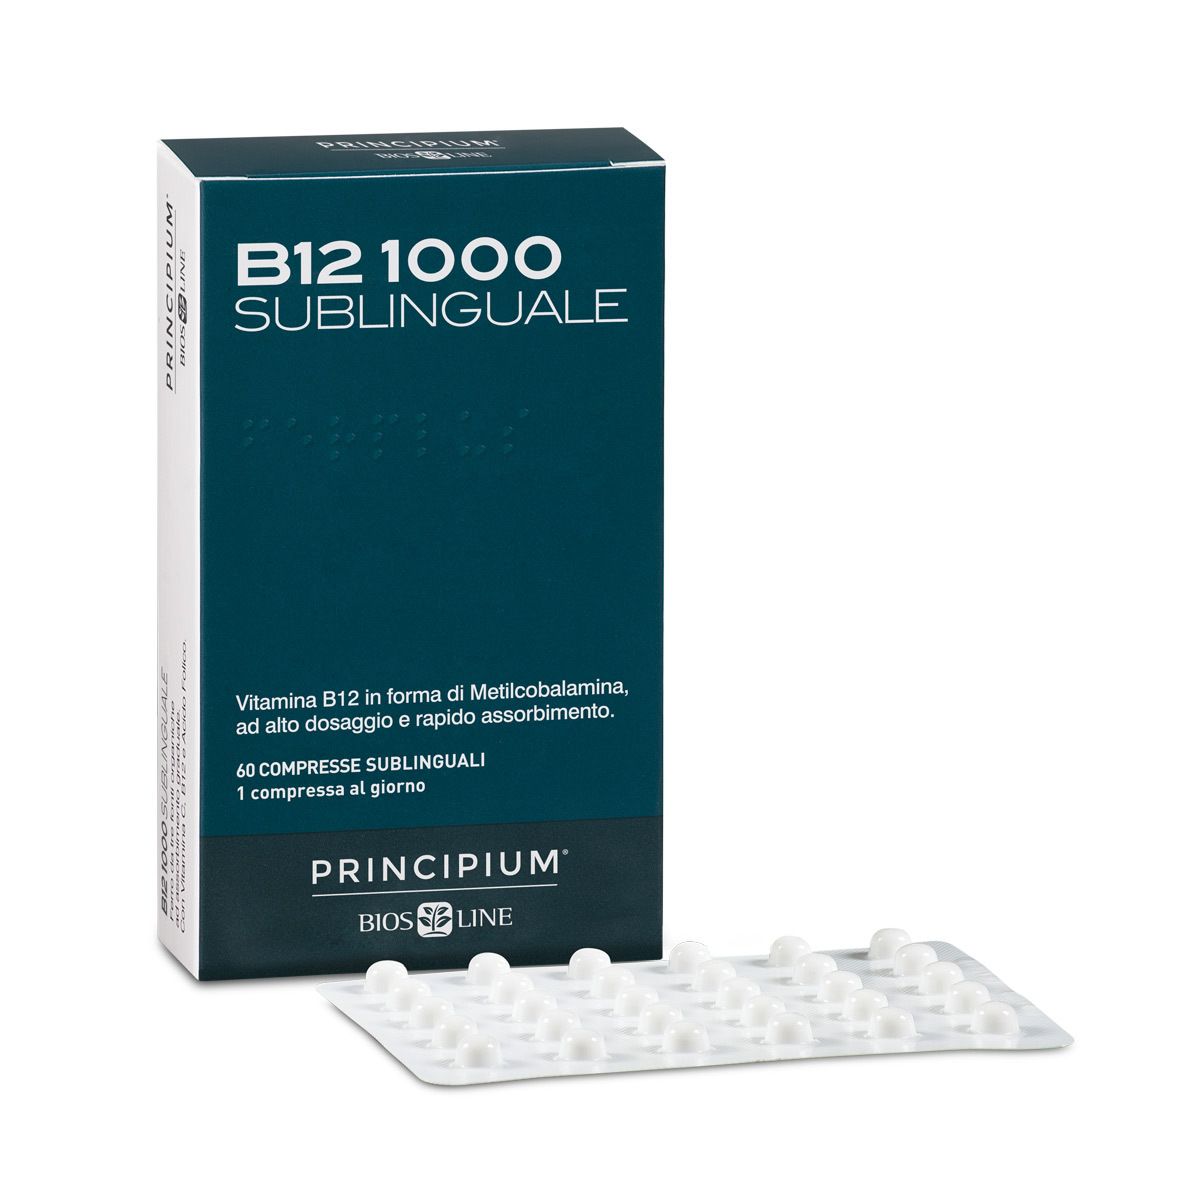 BIOSLINE Principium® B12 1000 Sublinguale